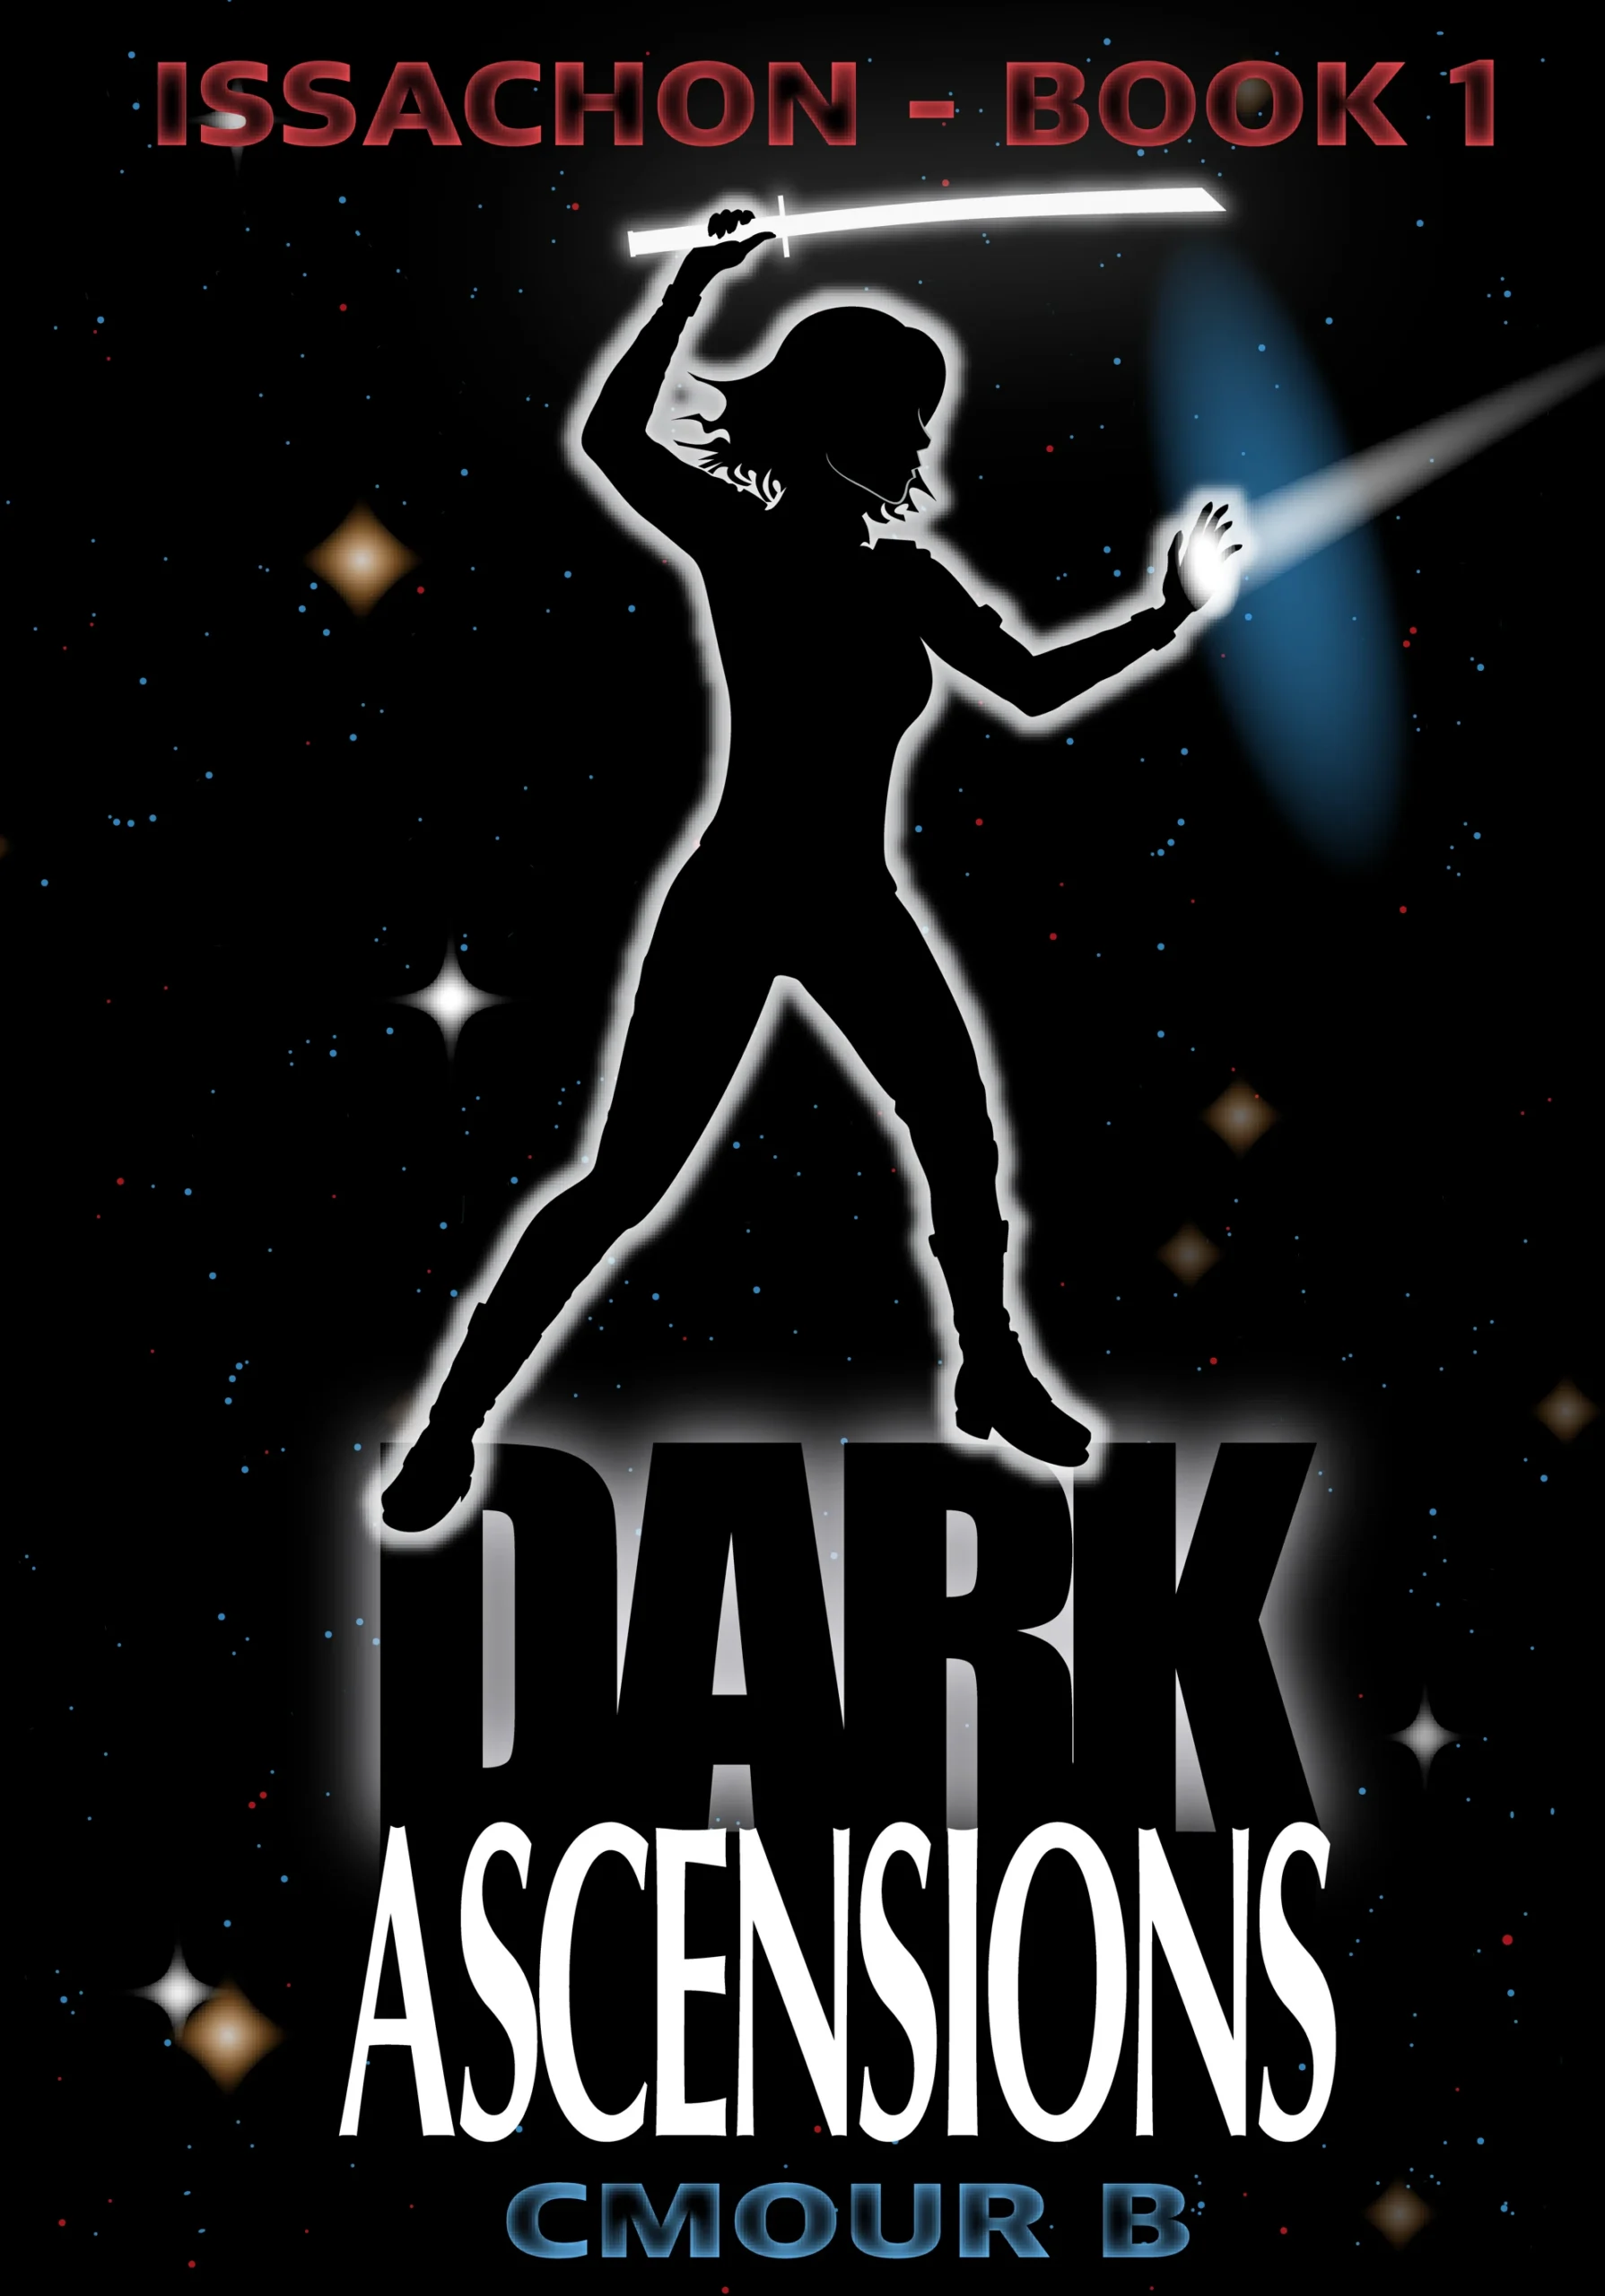 Dark Ascensions